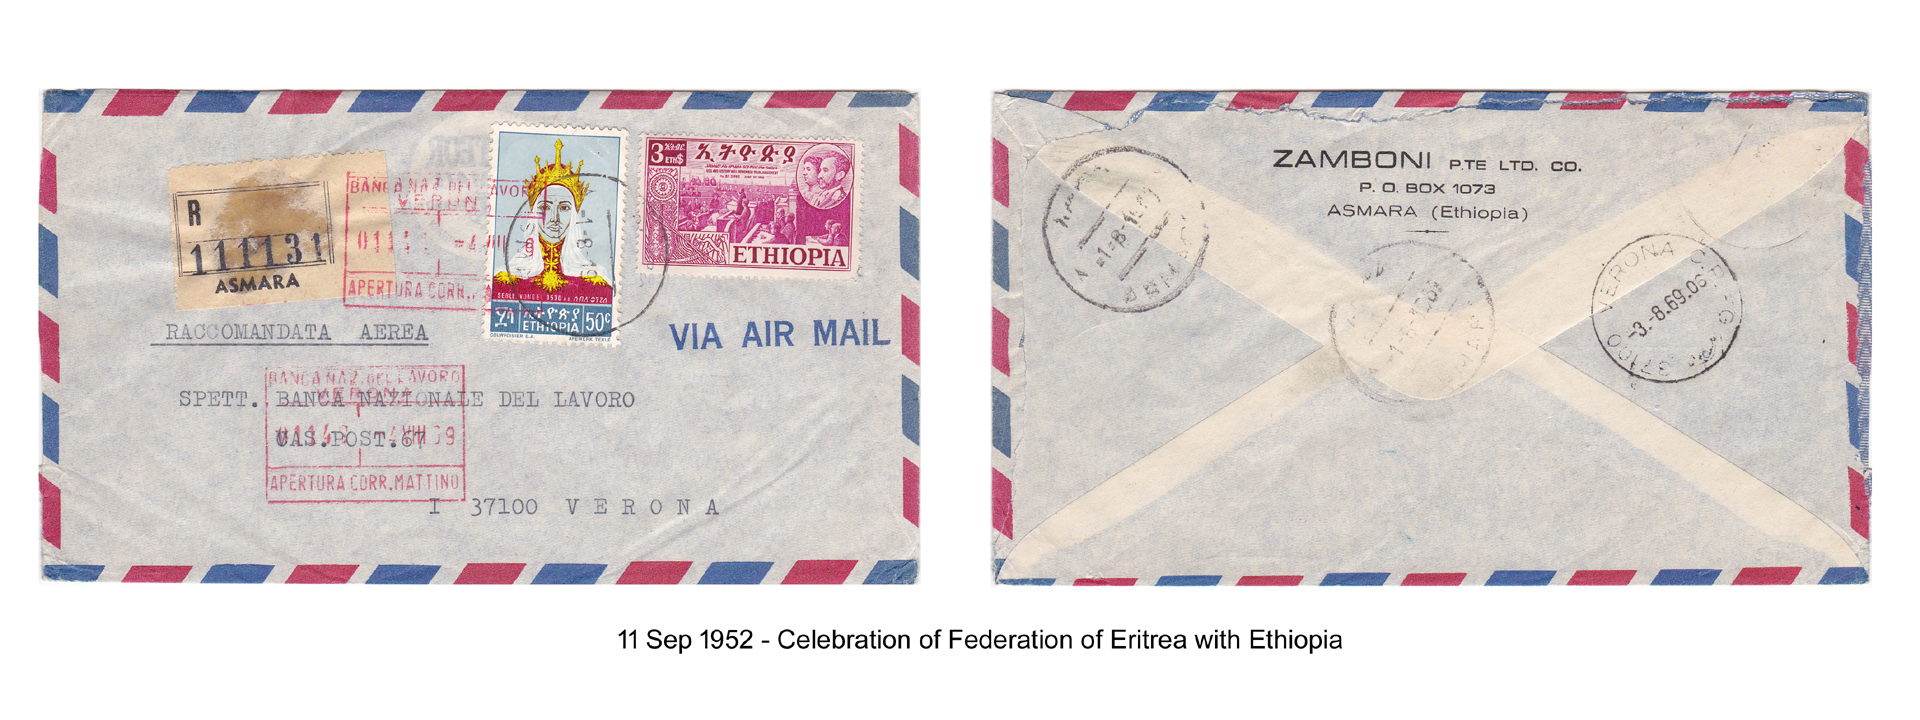 19520911 – Celebration of Federation of Eritrea with Ethiopia 2